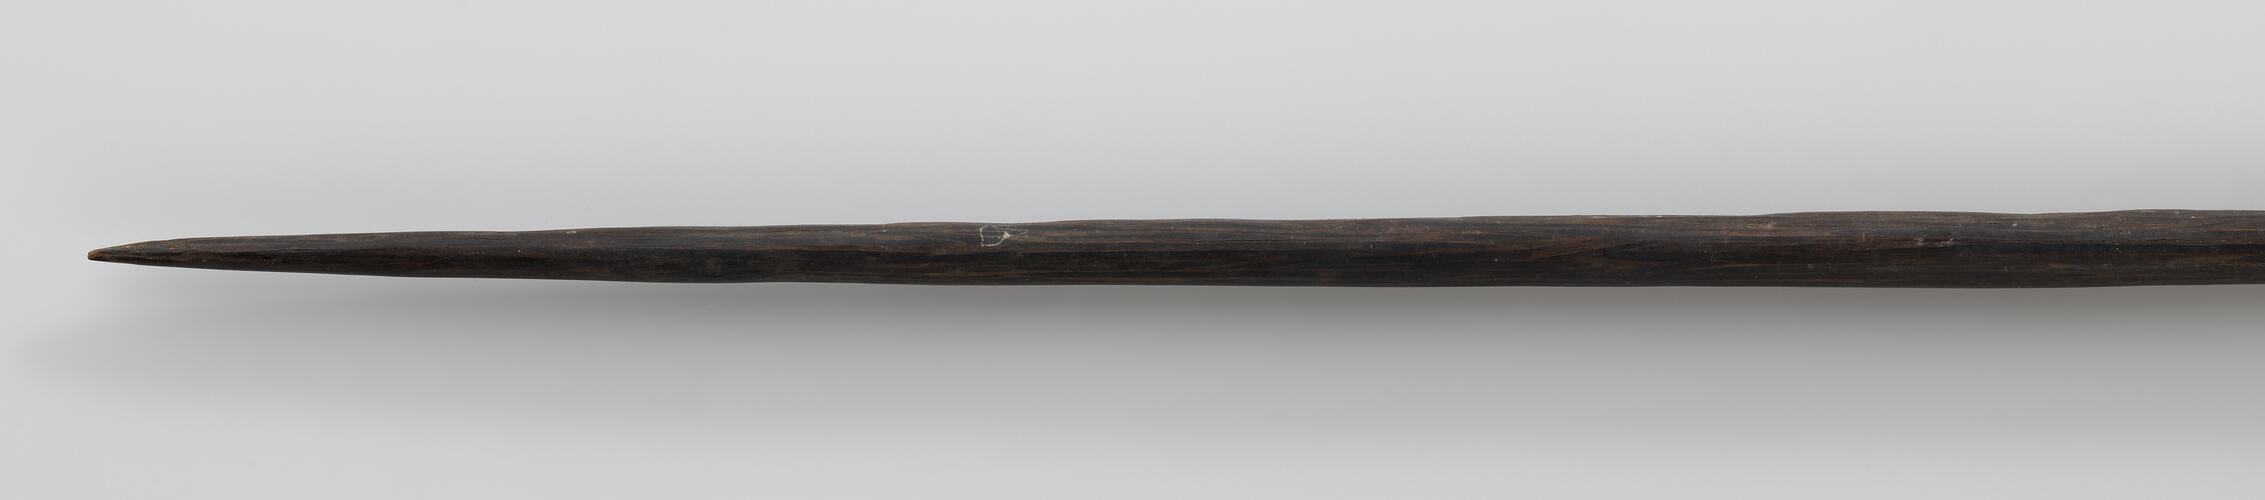 Dark wooden spear with sharp point.